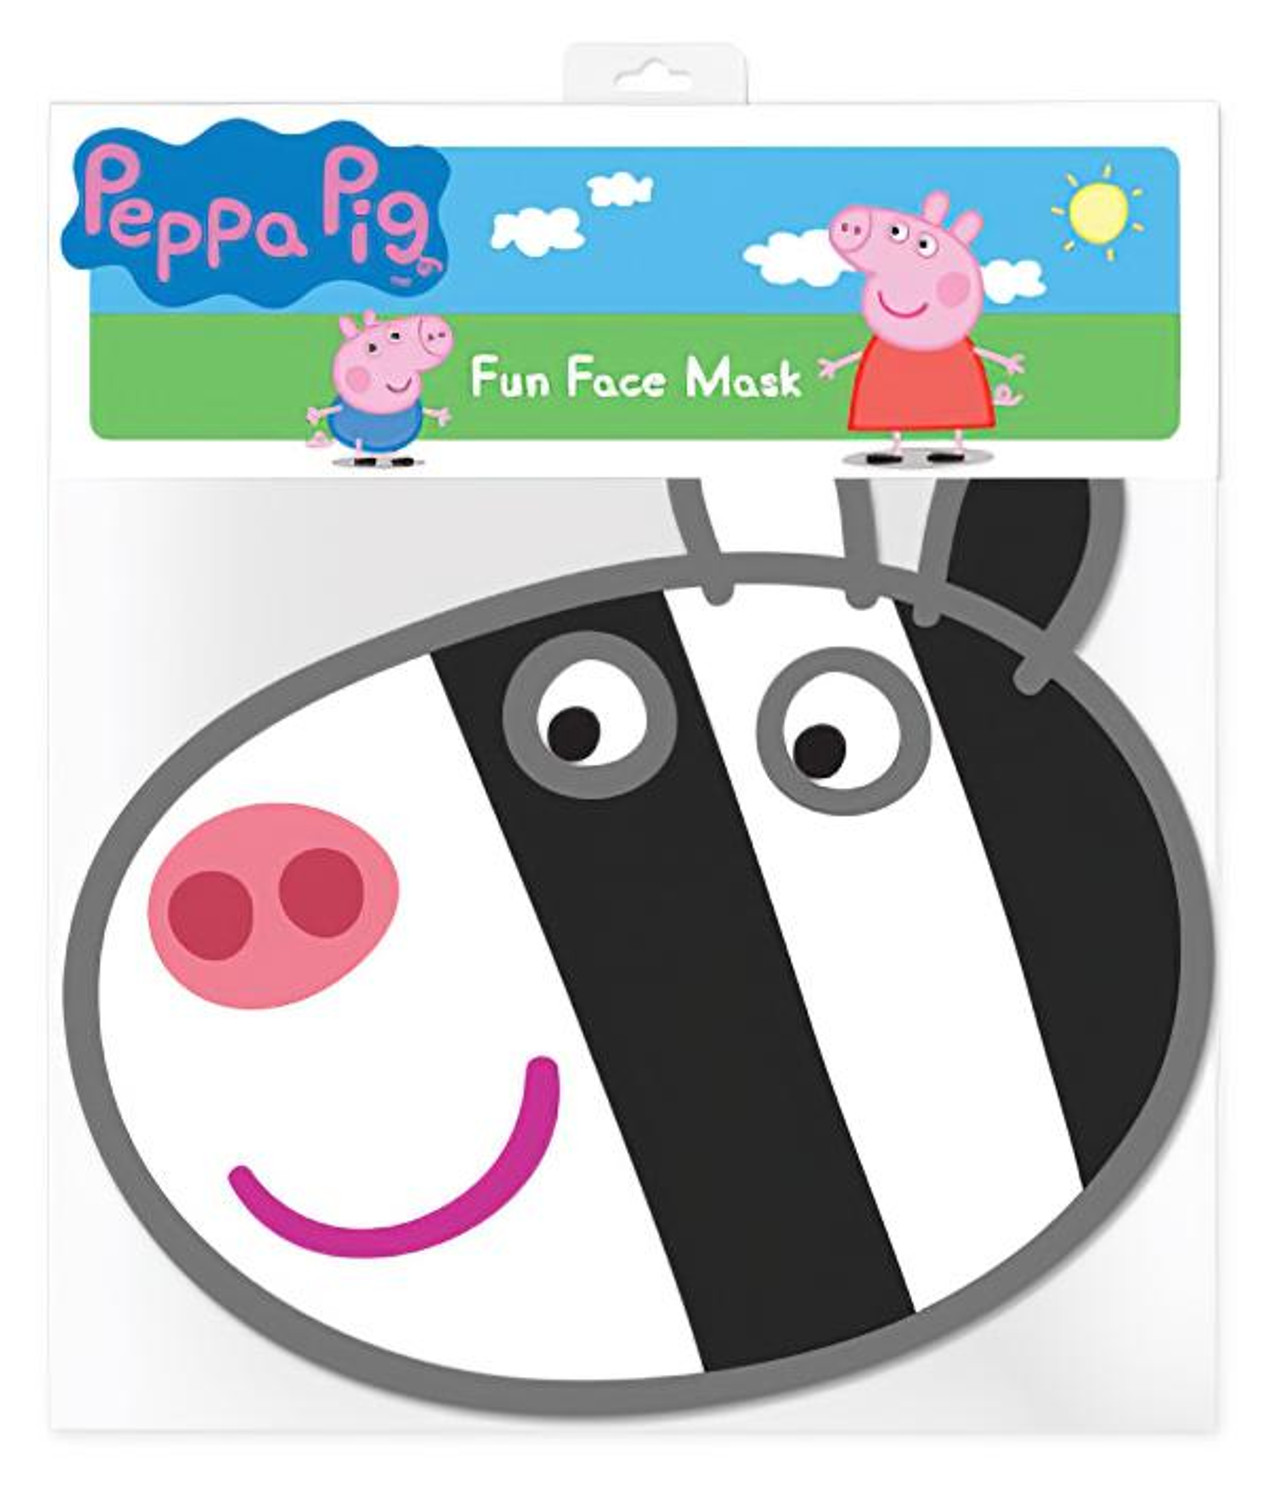 Peppa Pig: Zoe Zebra